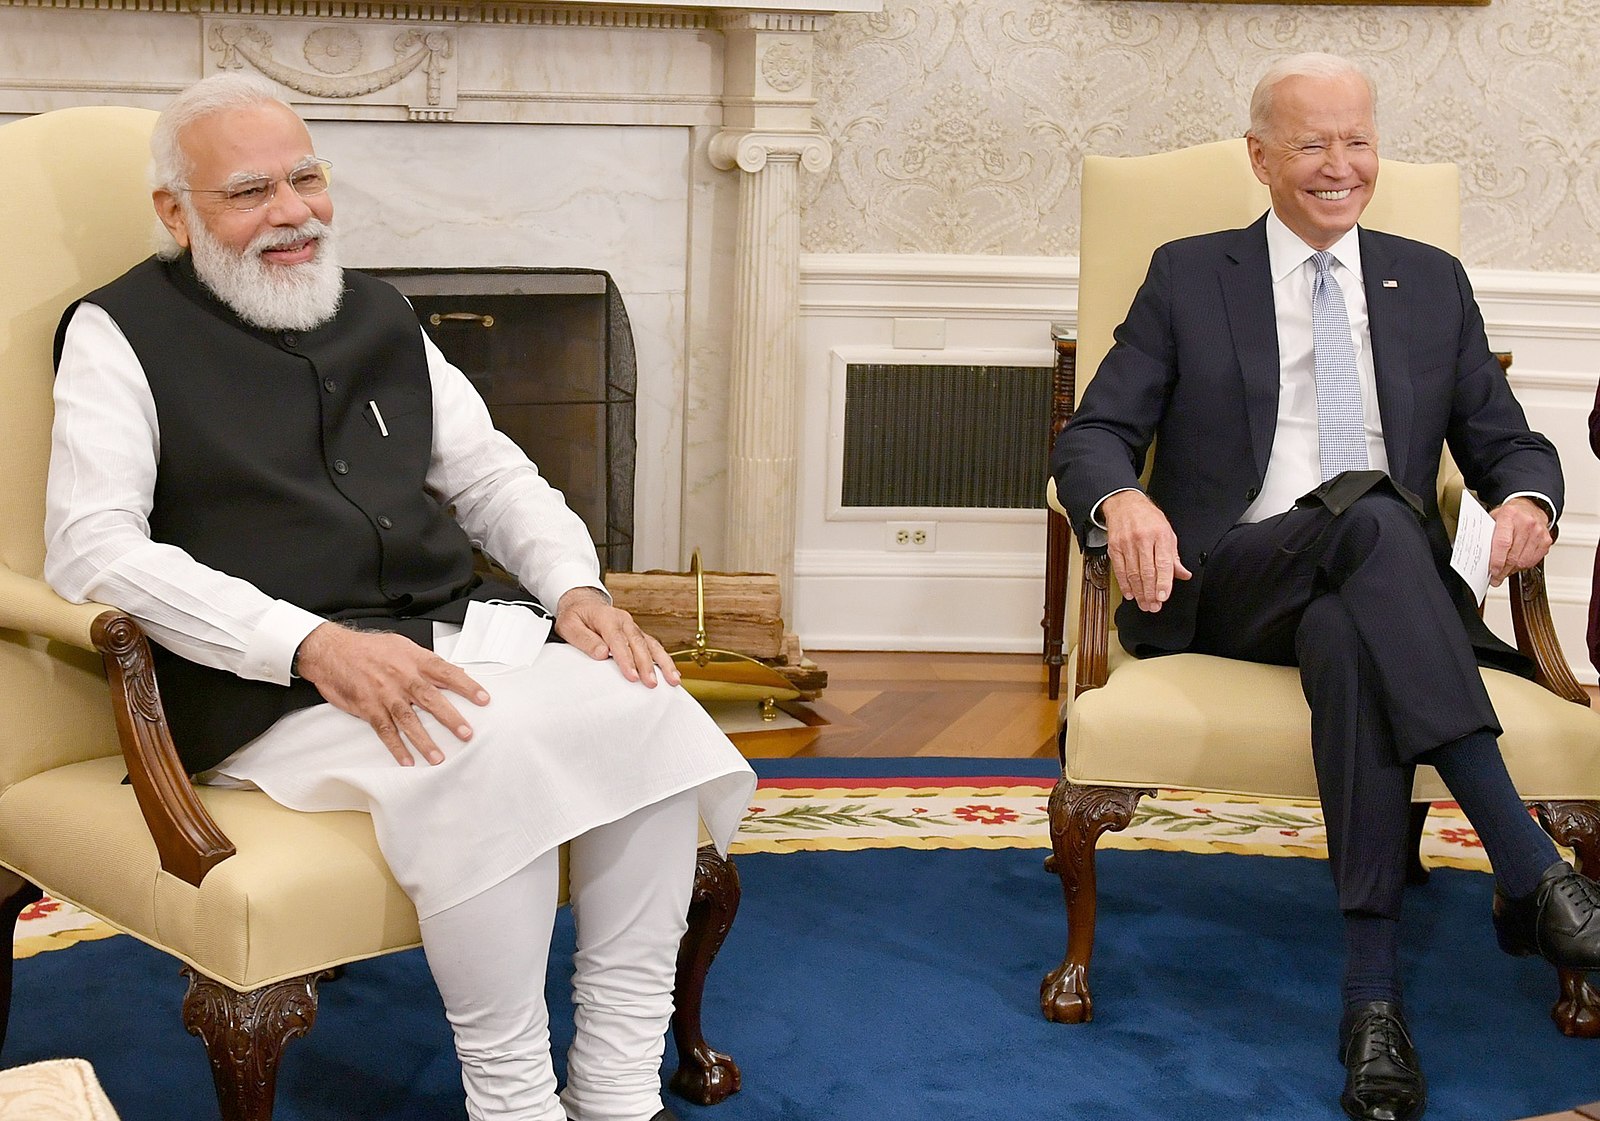 Prime Minister Narendra Modi of India and President Biden